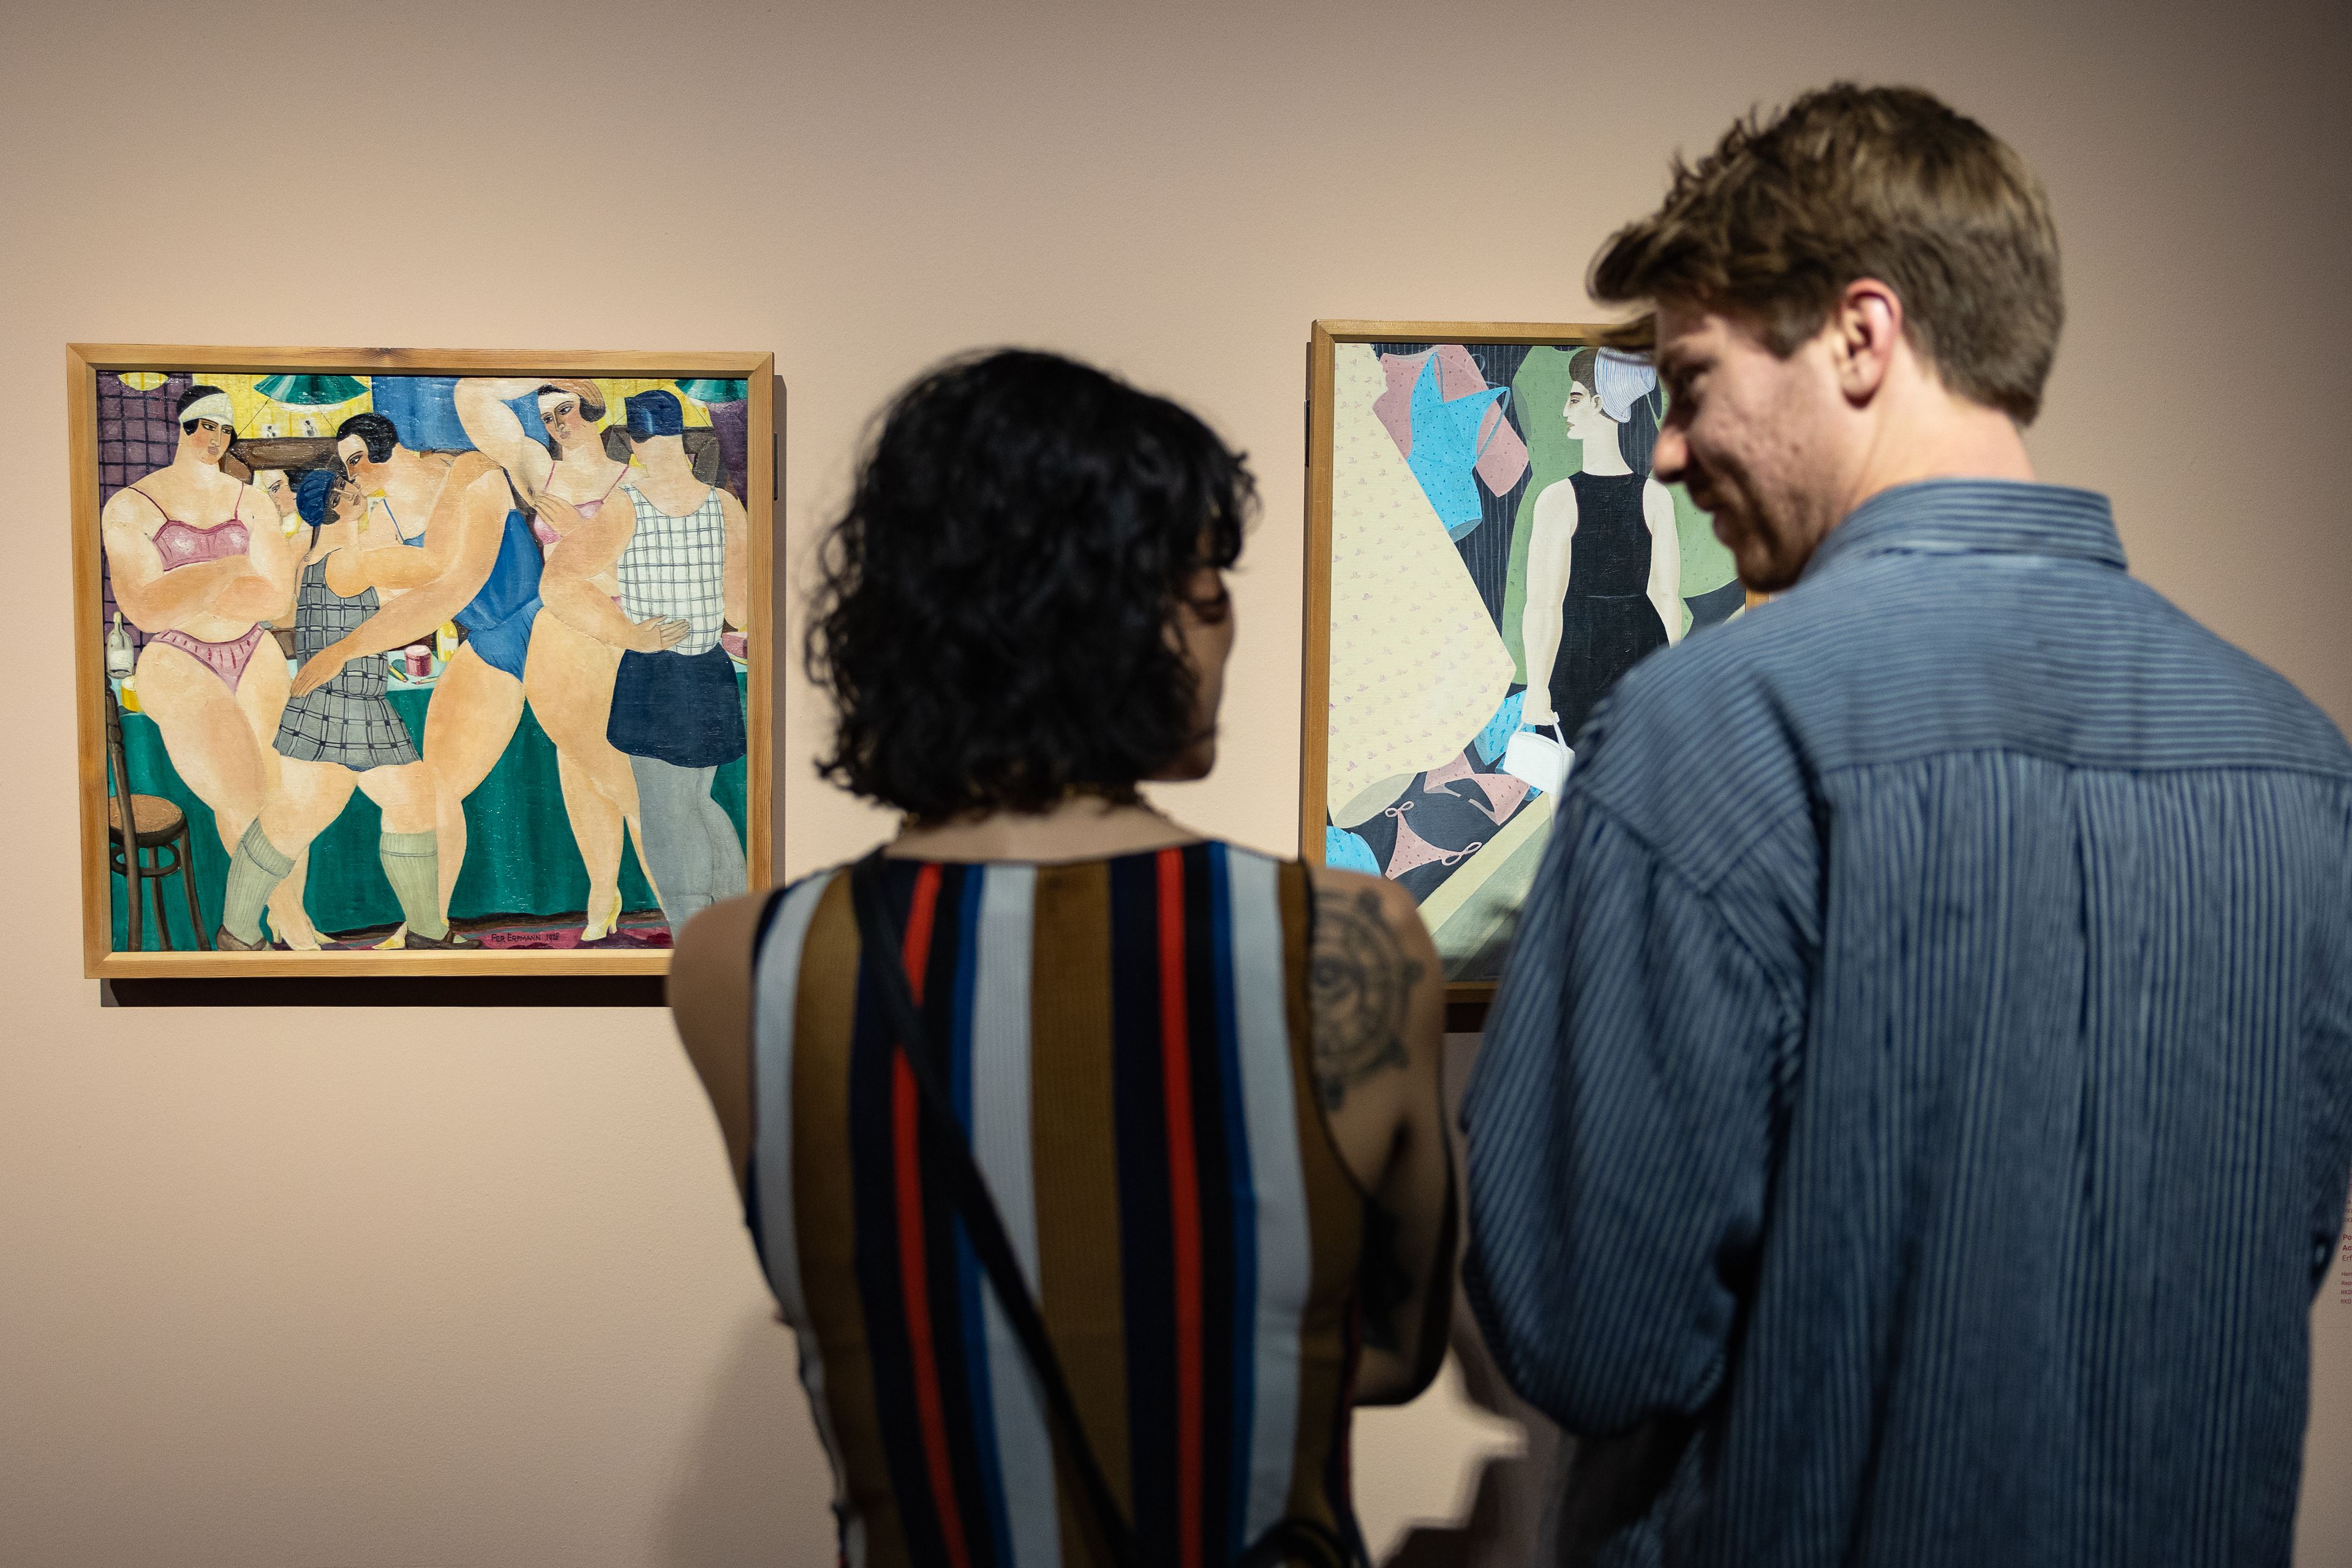 Bezoekers bekijken de kunstwerken van Ferdinand Erfmann tijdens hun bezoek aan tentoonstelling The Art of Drag in het Frans Hals Museum locatie HAL.